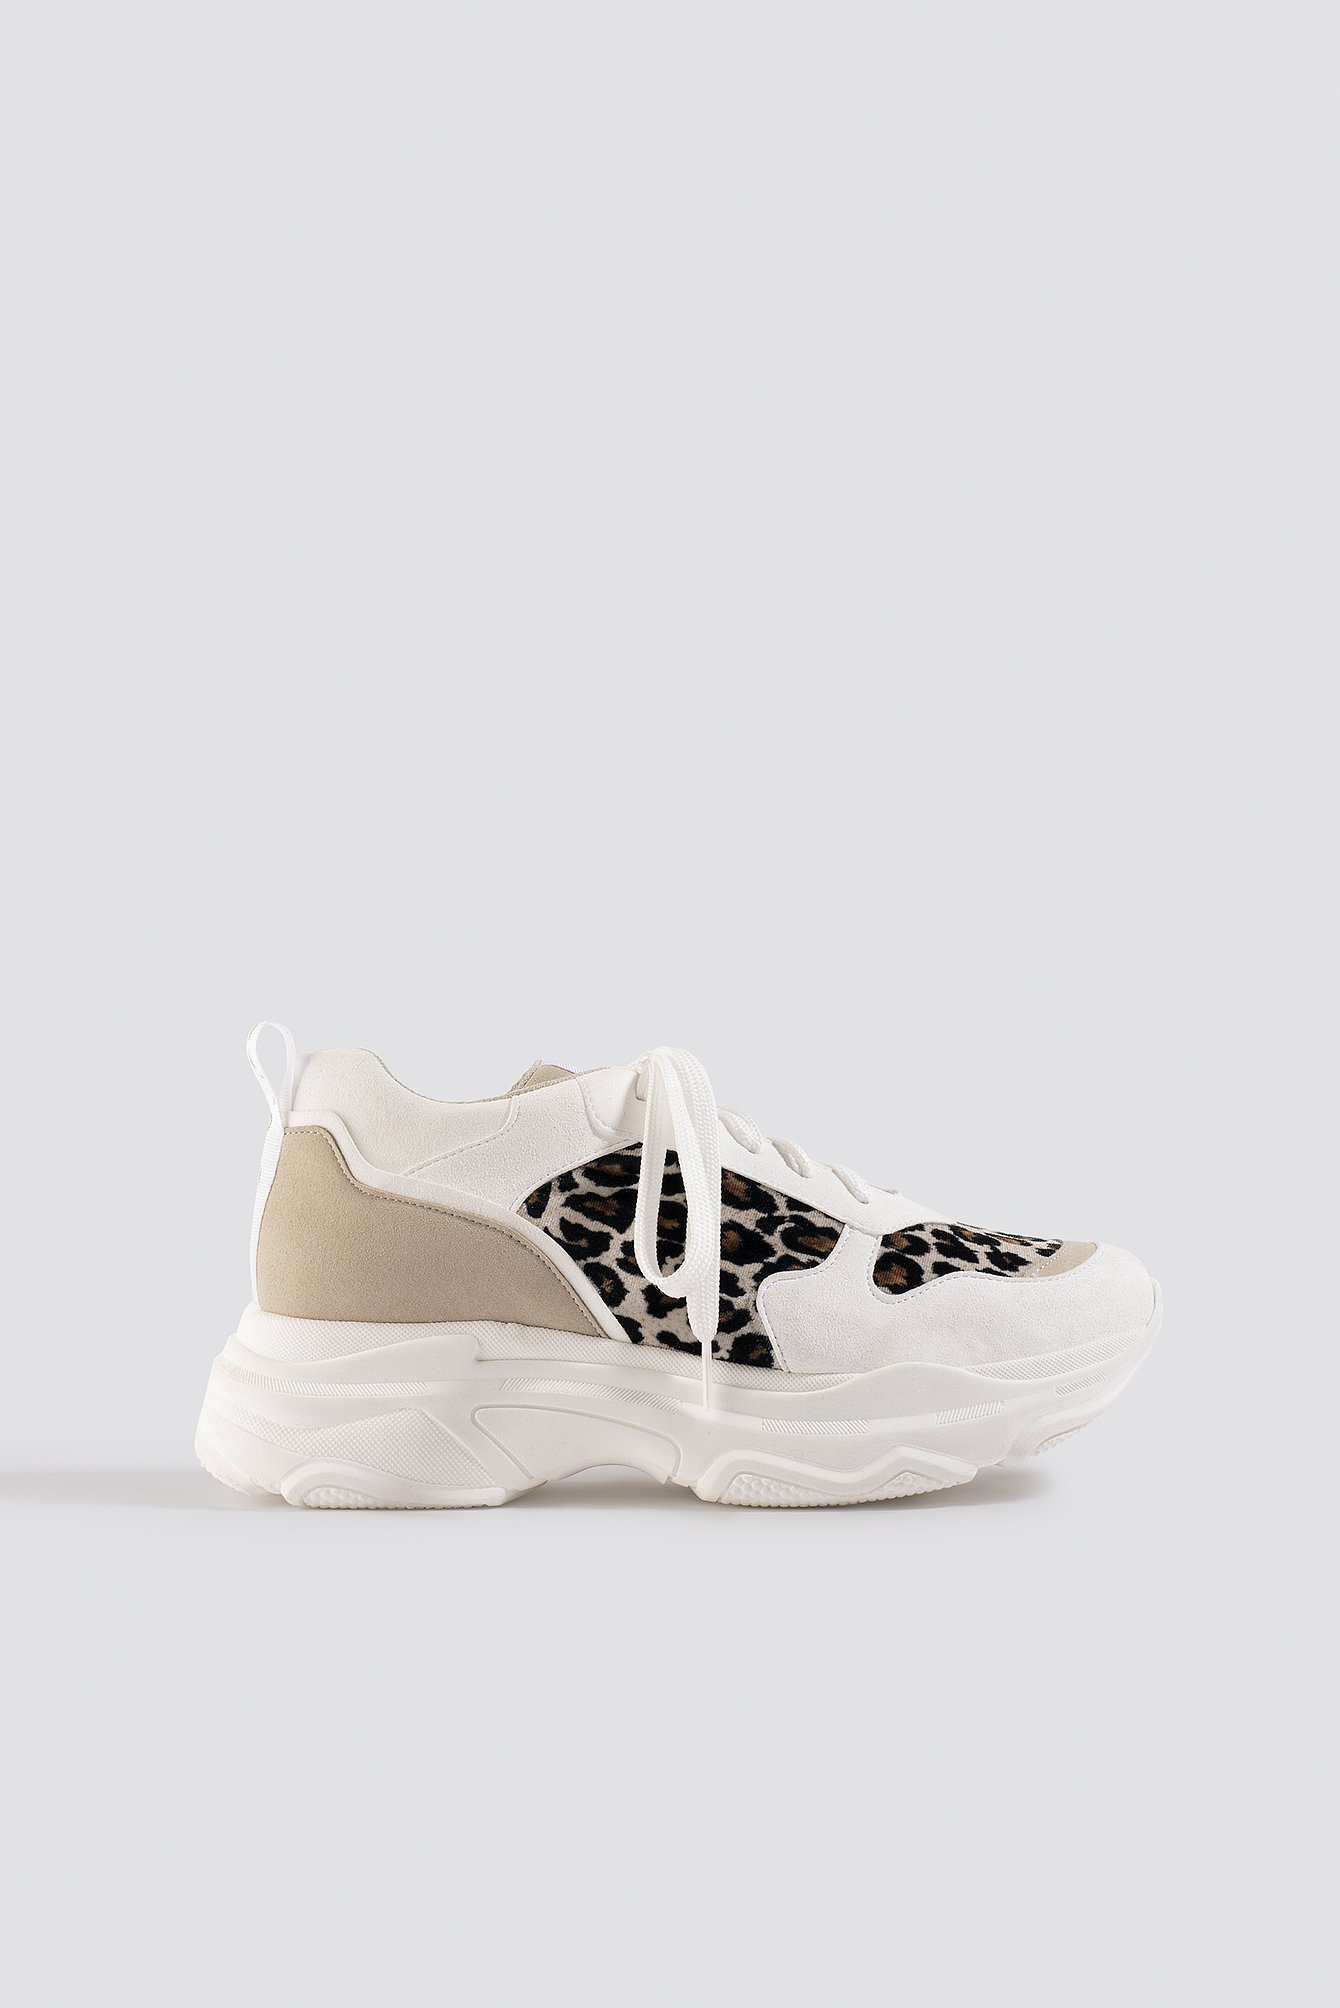 kd leopard print shoes